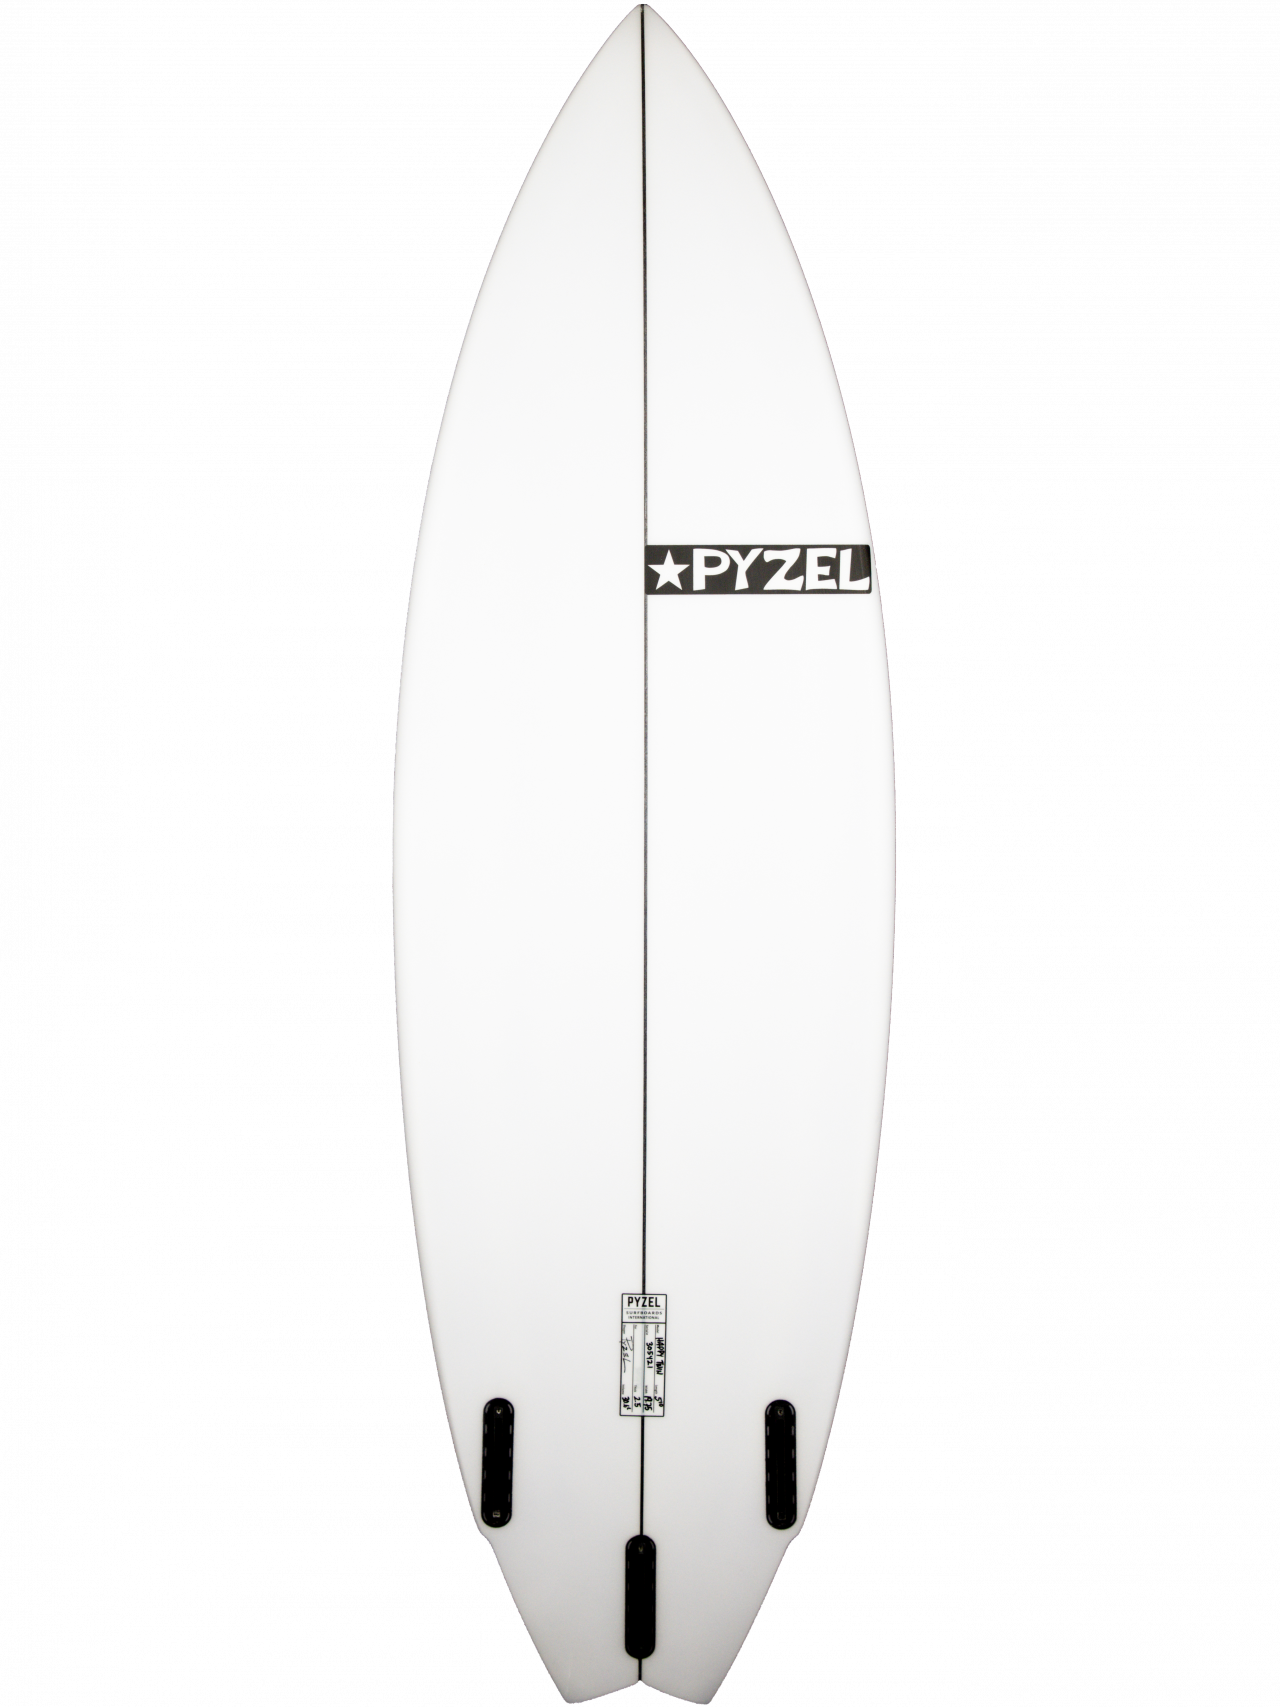 Pyzel Surfboards - Happy Twin